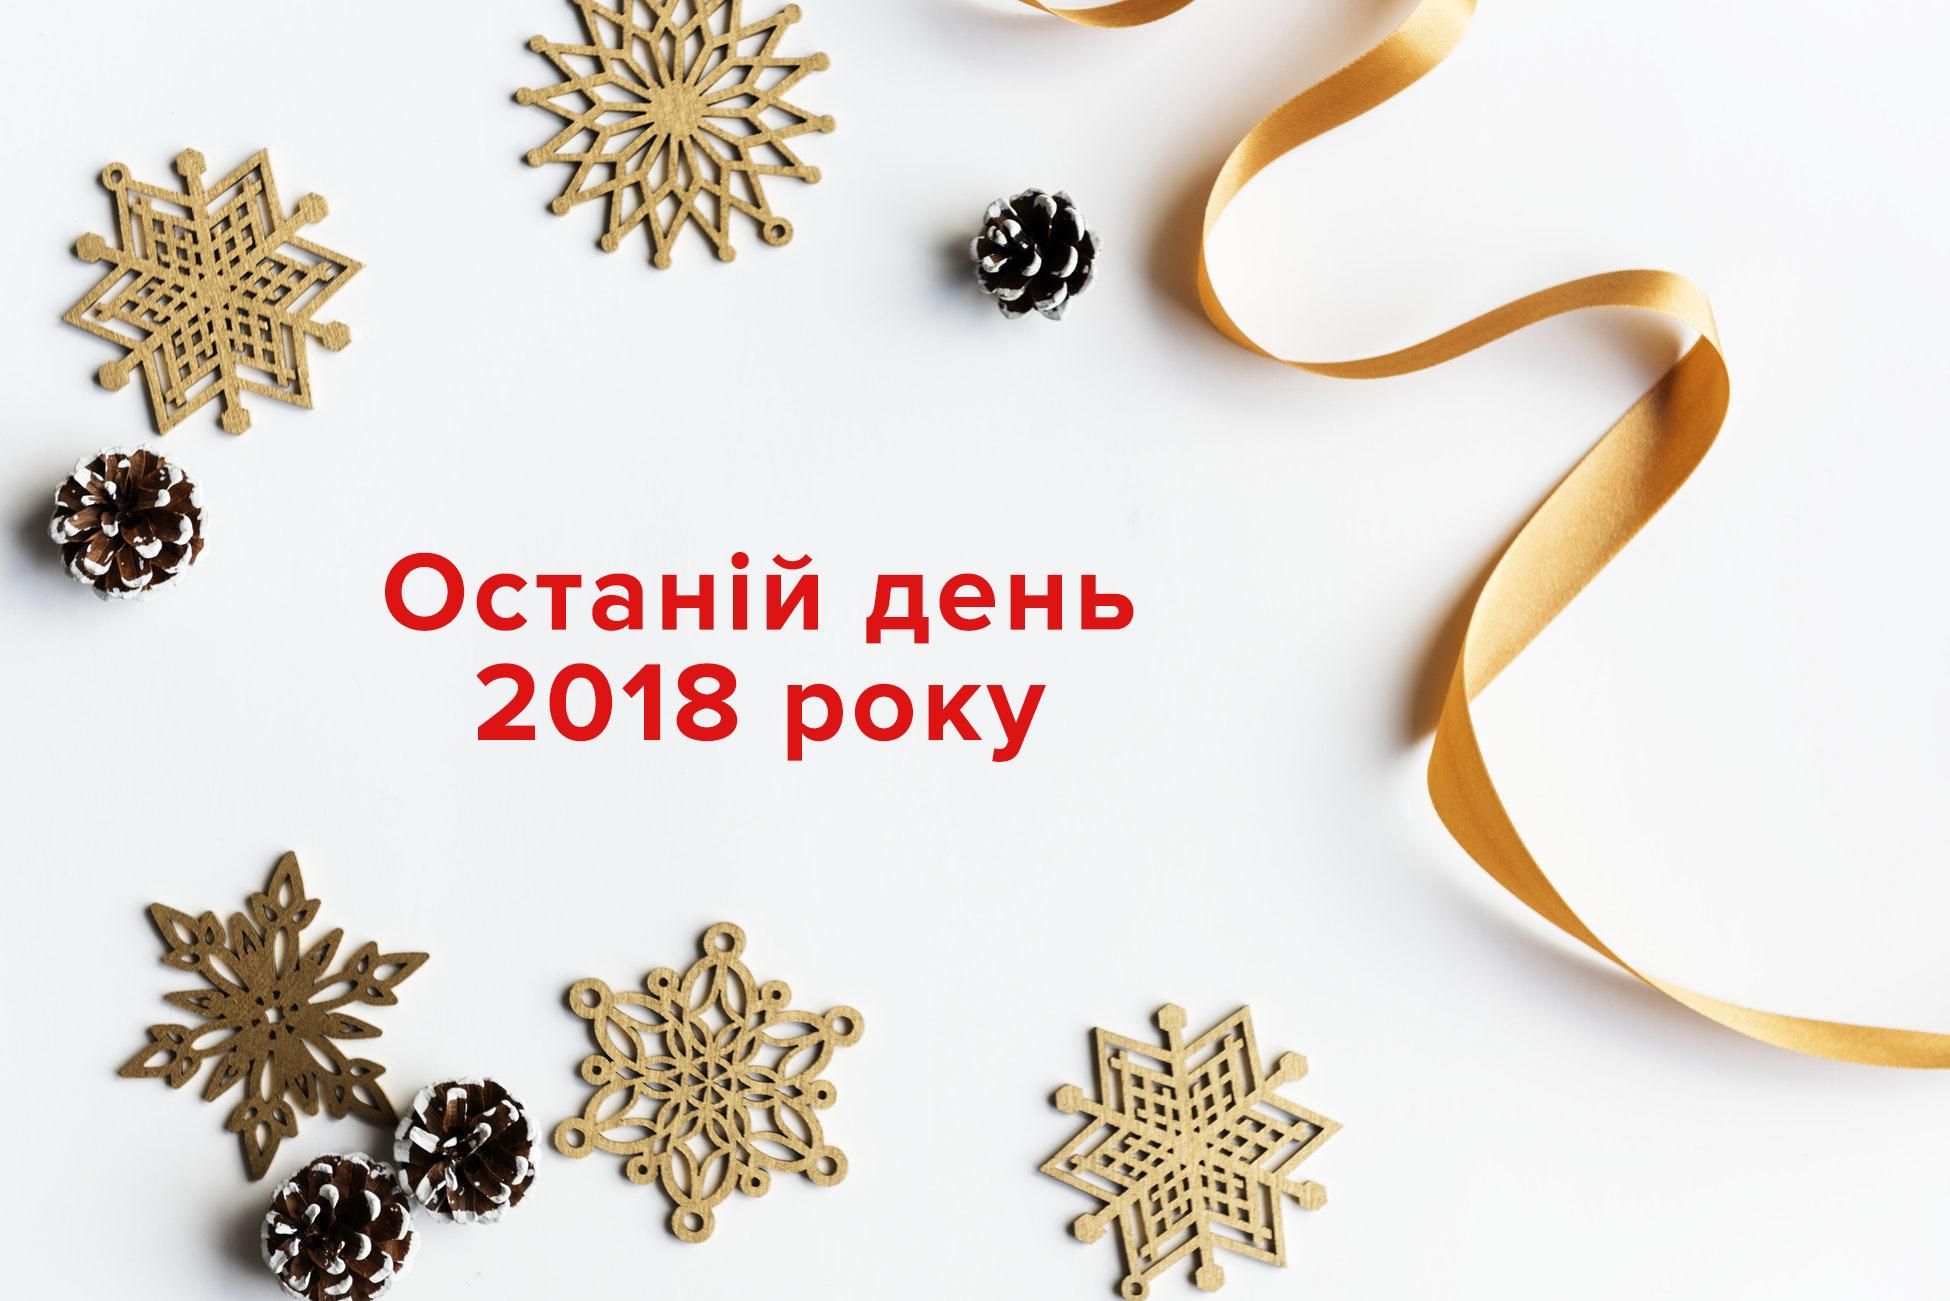 31 декабря 2018 – праздник Новый год 2019 в Украине, что нельзя делать 31 декабря 2018